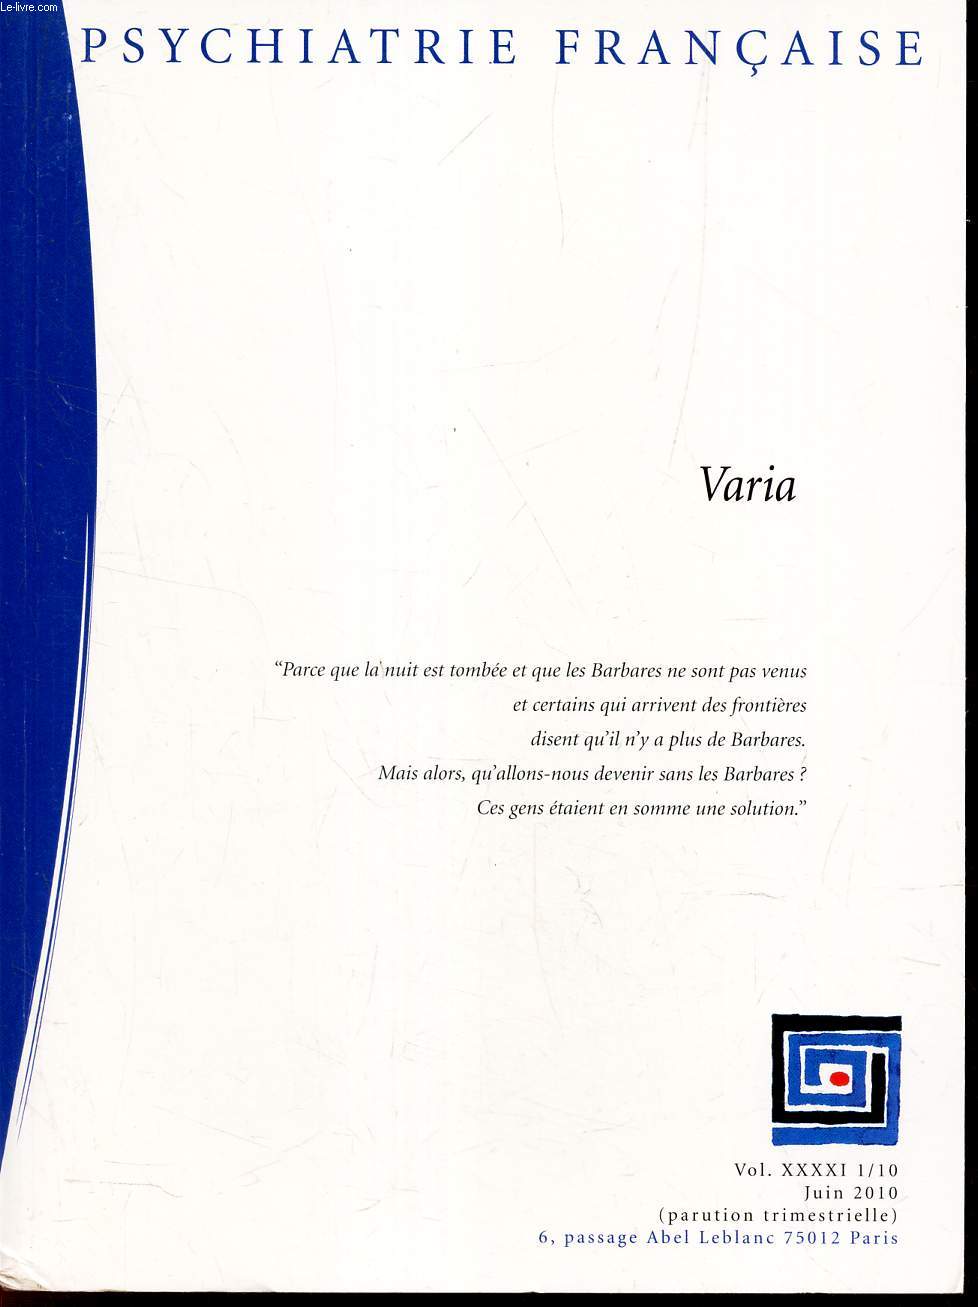 PSYCHIATRIE FRANCAISE - VOL.XXXXI 1/10 JUIN 2010. / VARIA.